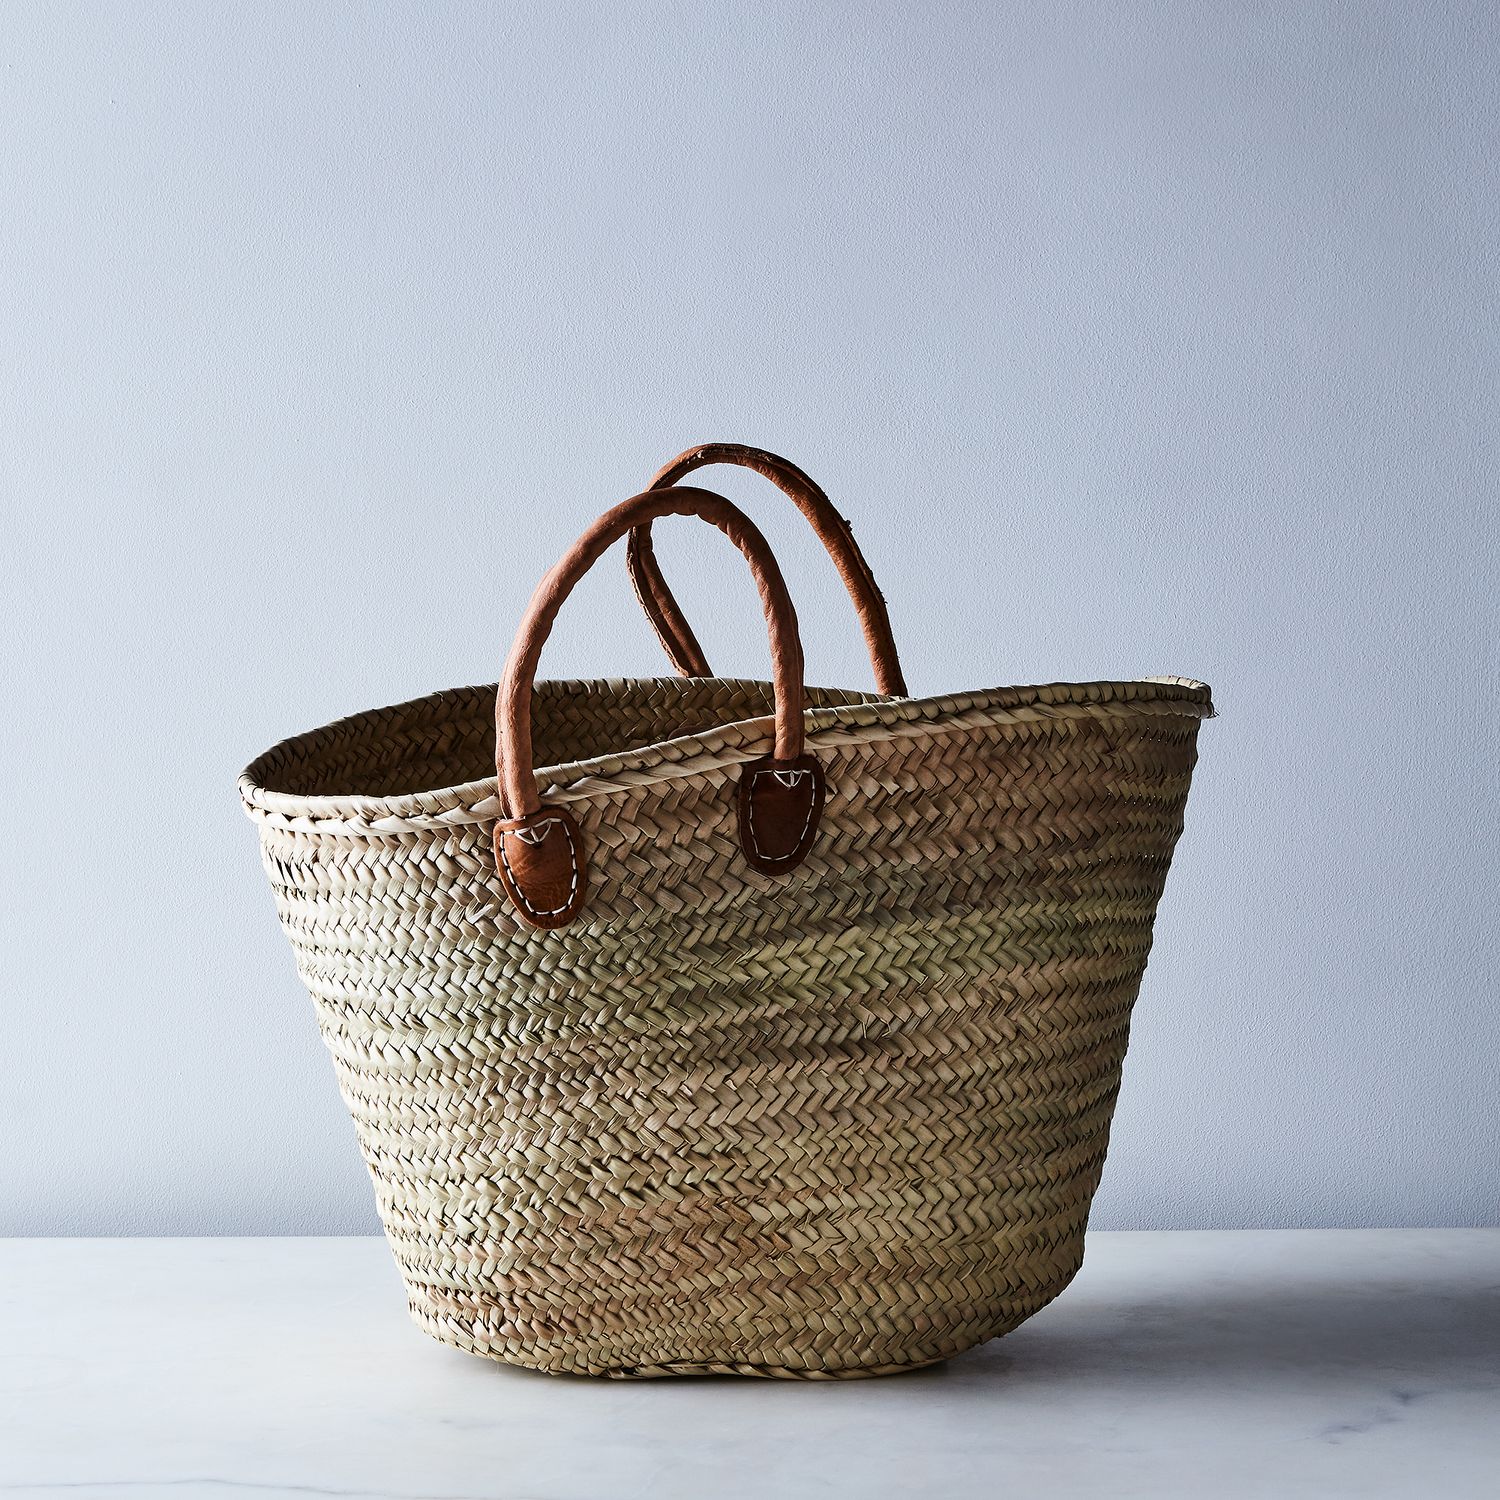 French Market Basket  Bags, Market baskets, French market bag